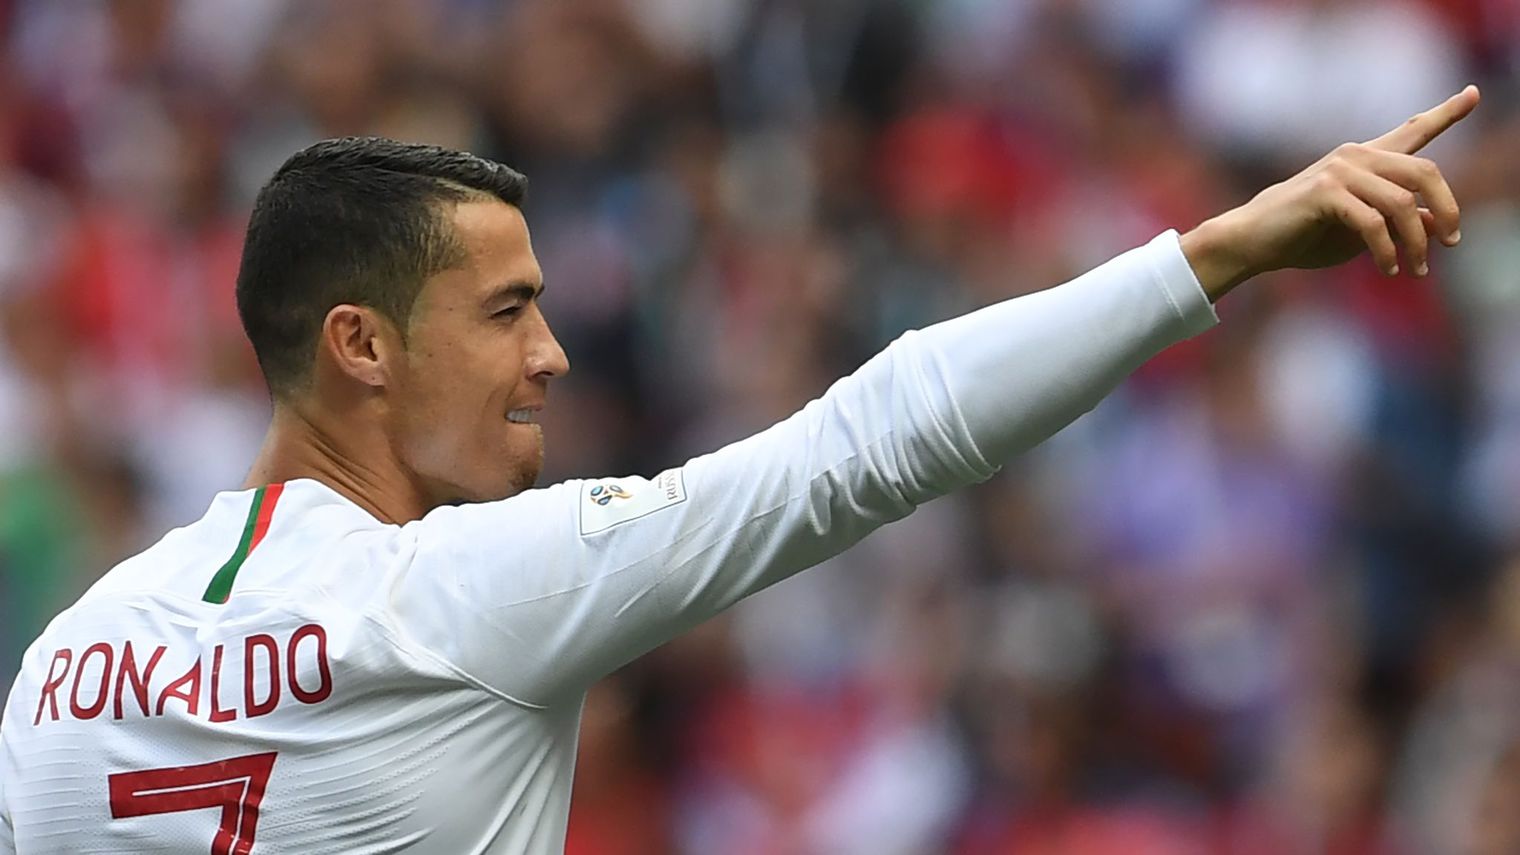 Mondial-2018: le 4e but de Ronaldo offre la victoire au Portugal et élimine le Maroc